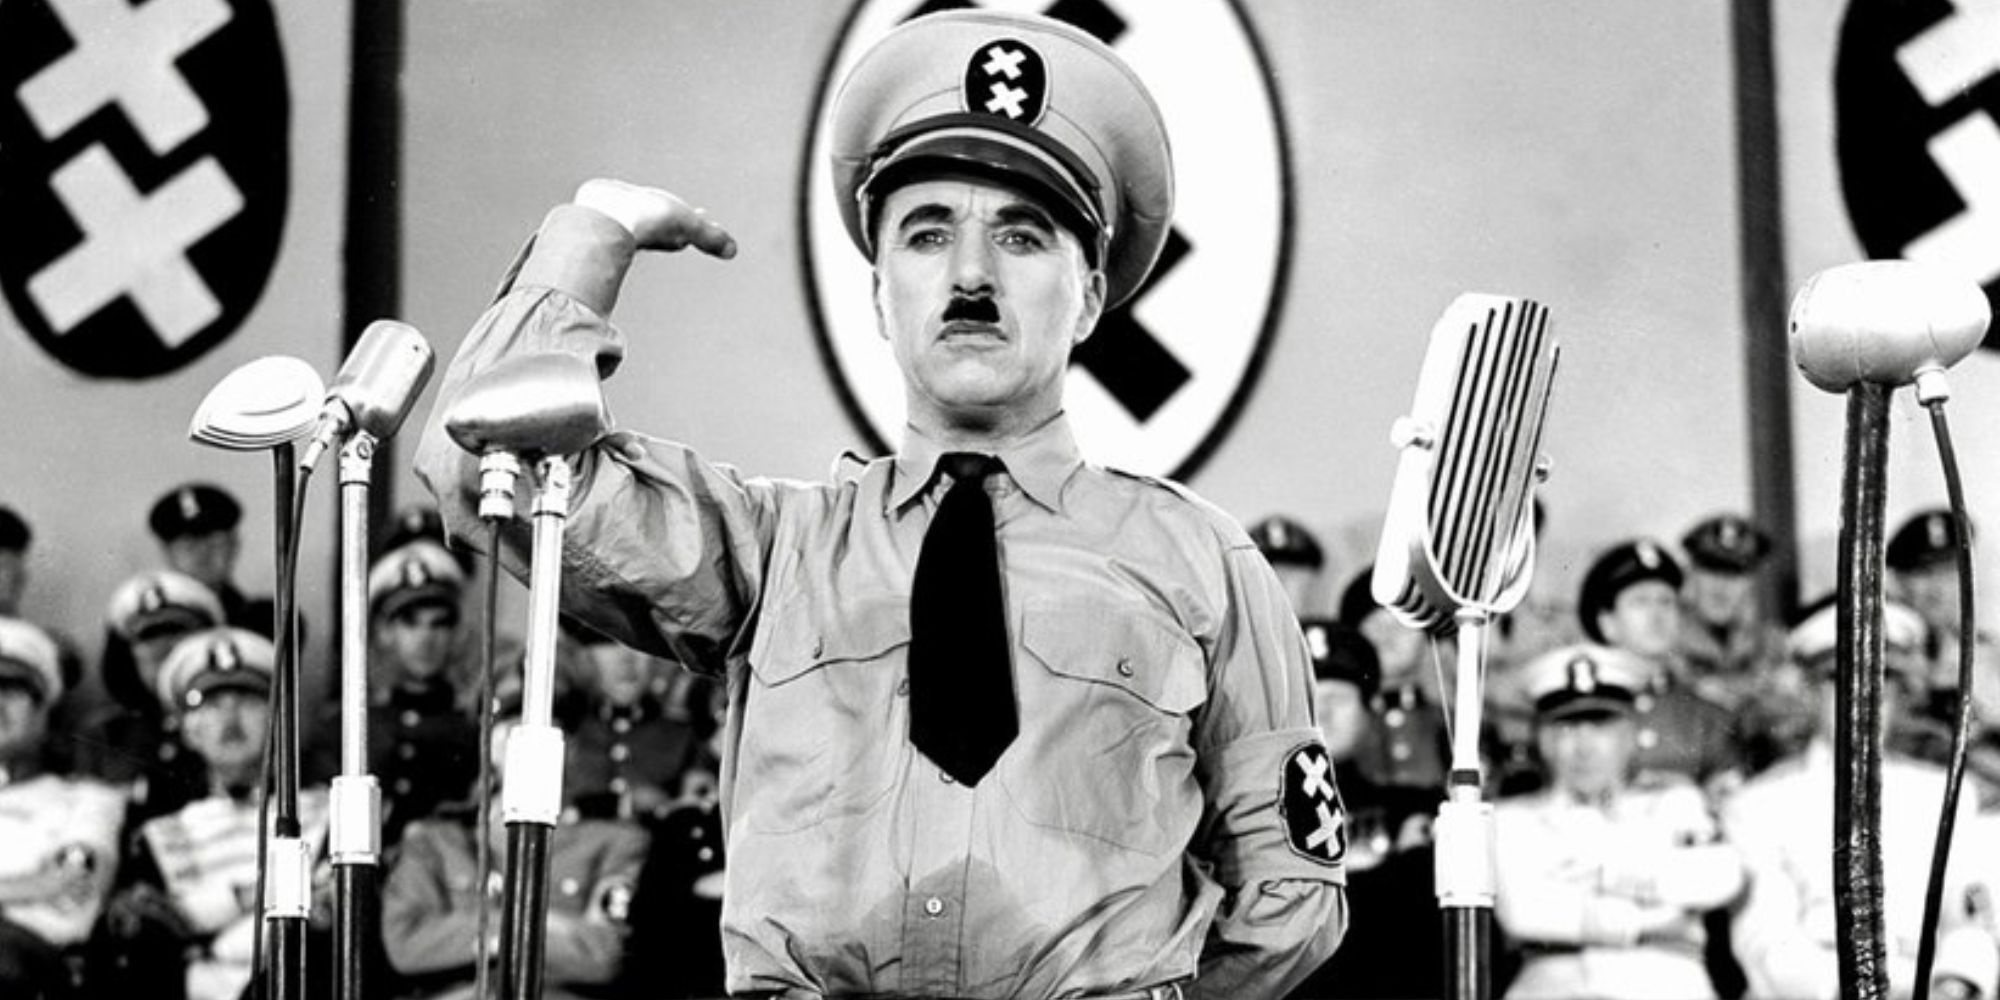 كان تشارلي شابلن يرتدي زي أدولف هتلر وهو يرفع ذراعه ويقف على منصة في فيلم The Great Dictator